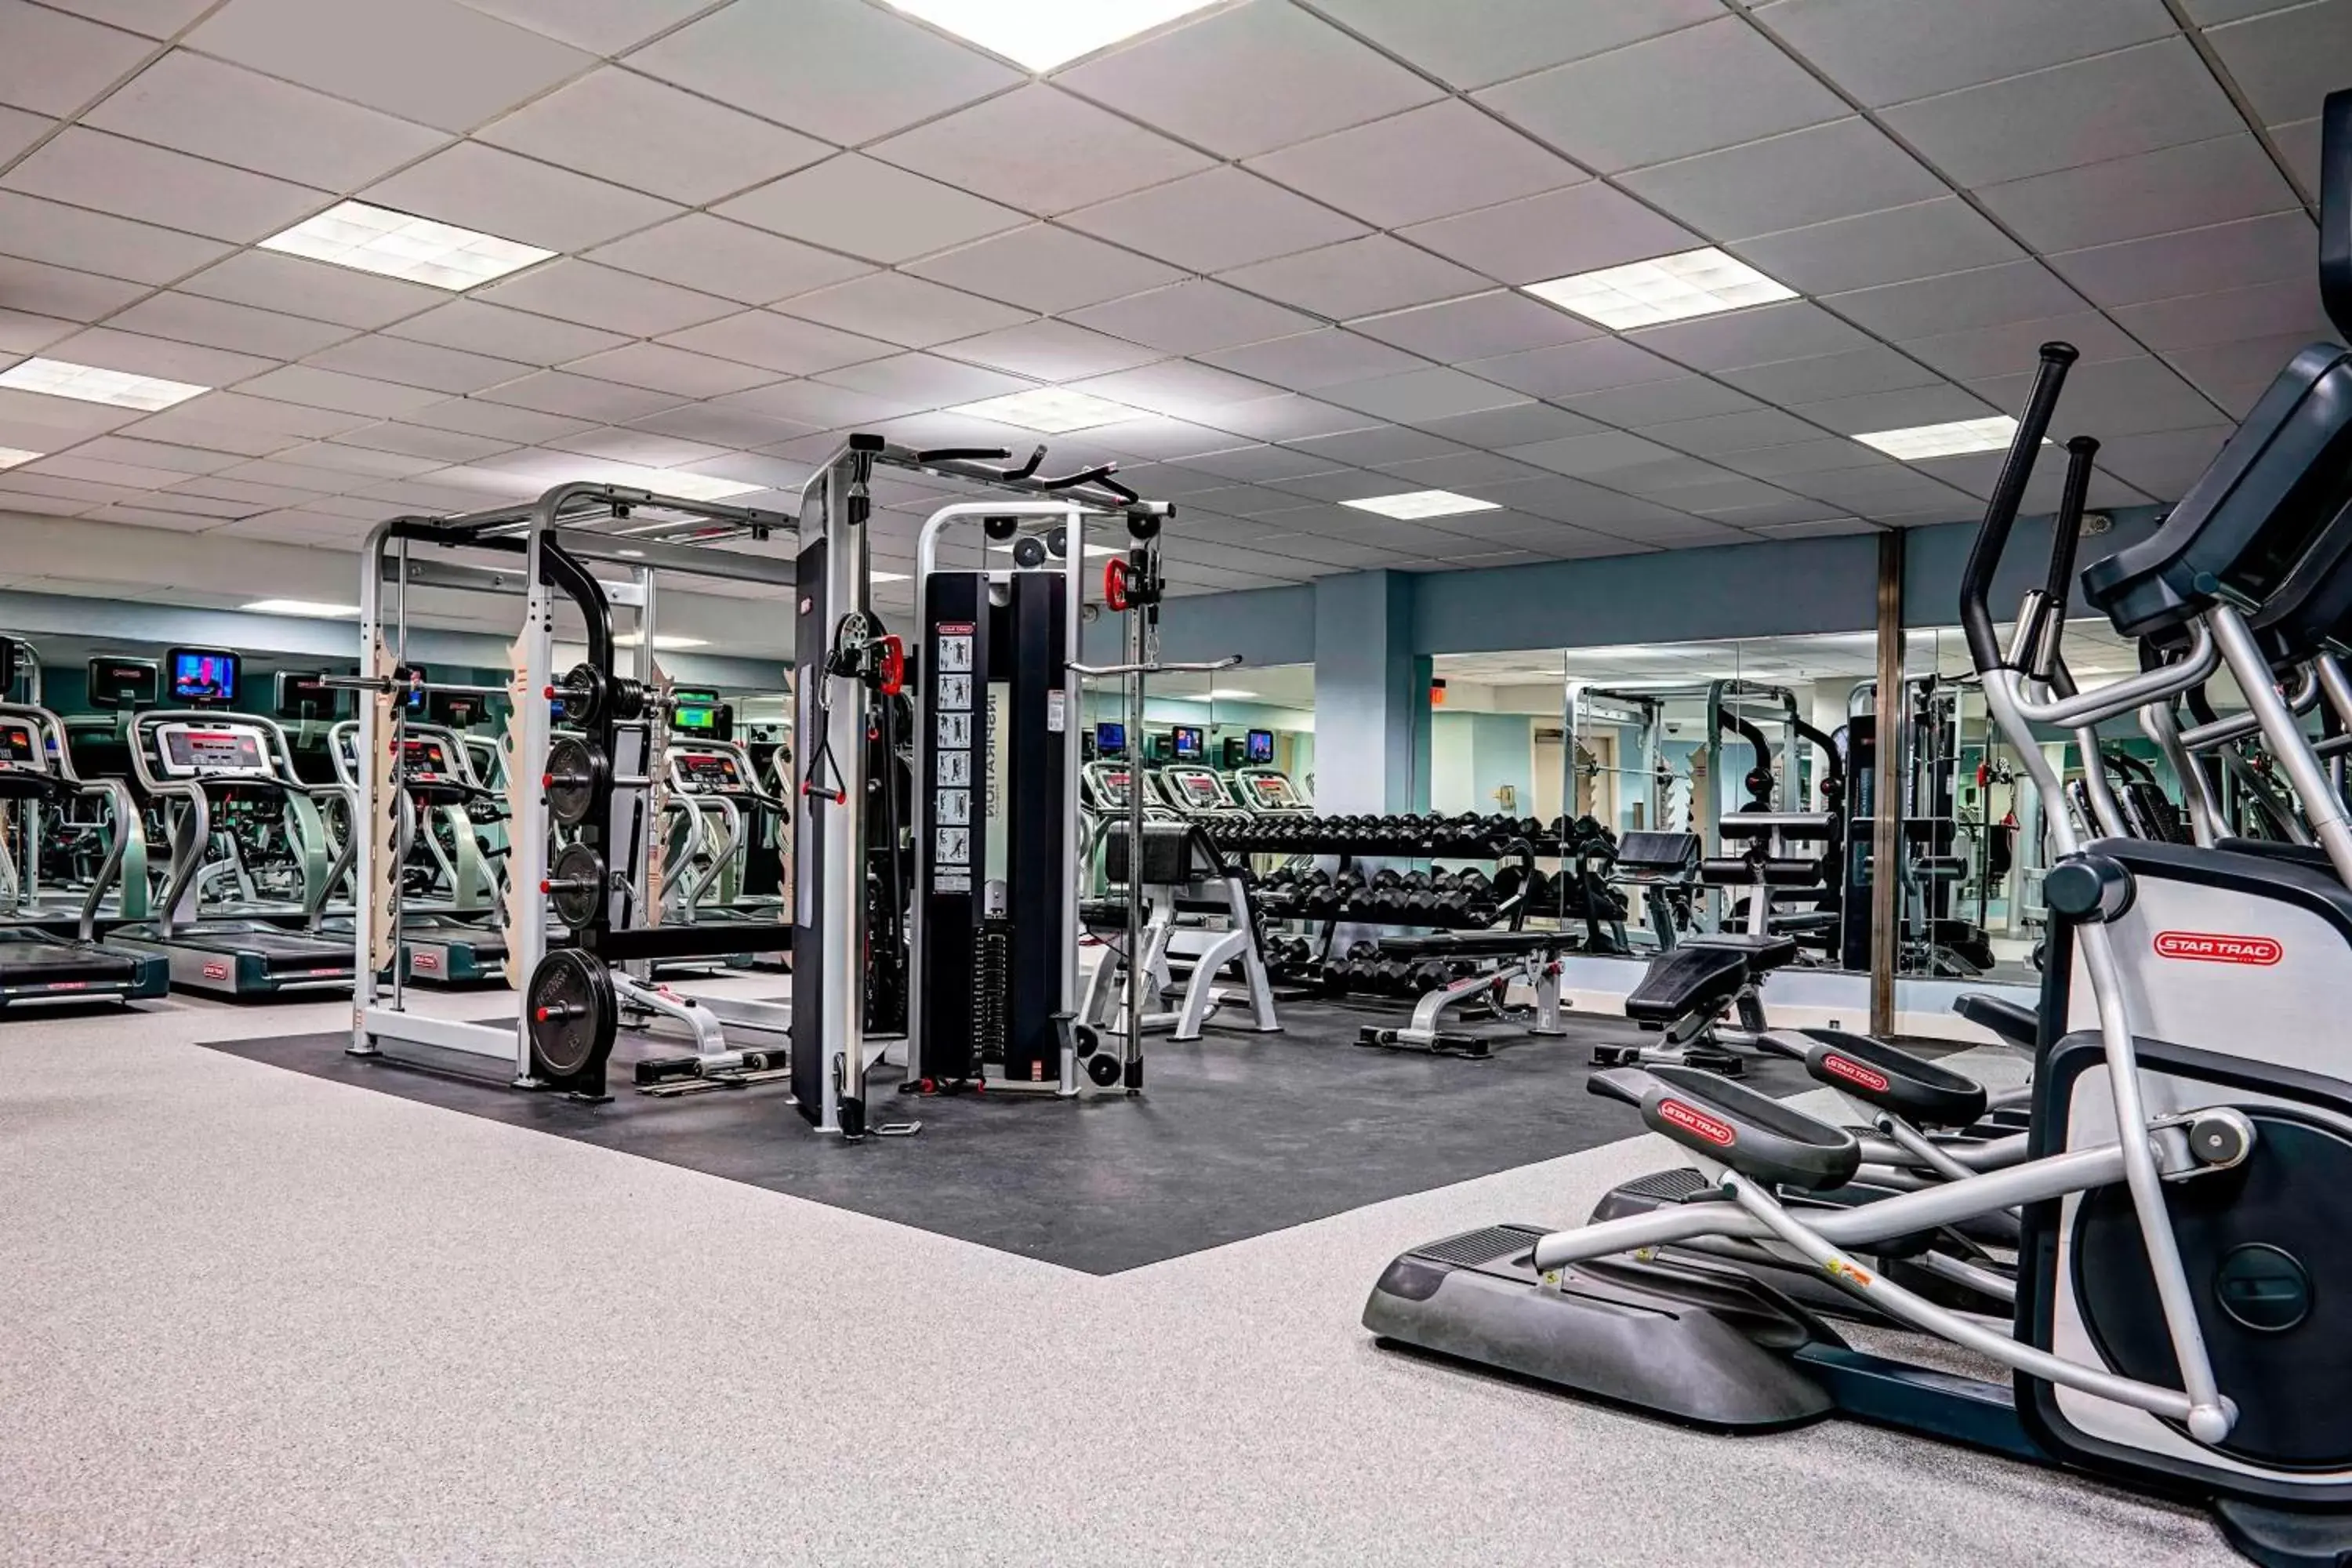 Fitness centre/facilities, Fitness Center/Facilities in San Juan Marriott Resort and Stellaris Casino